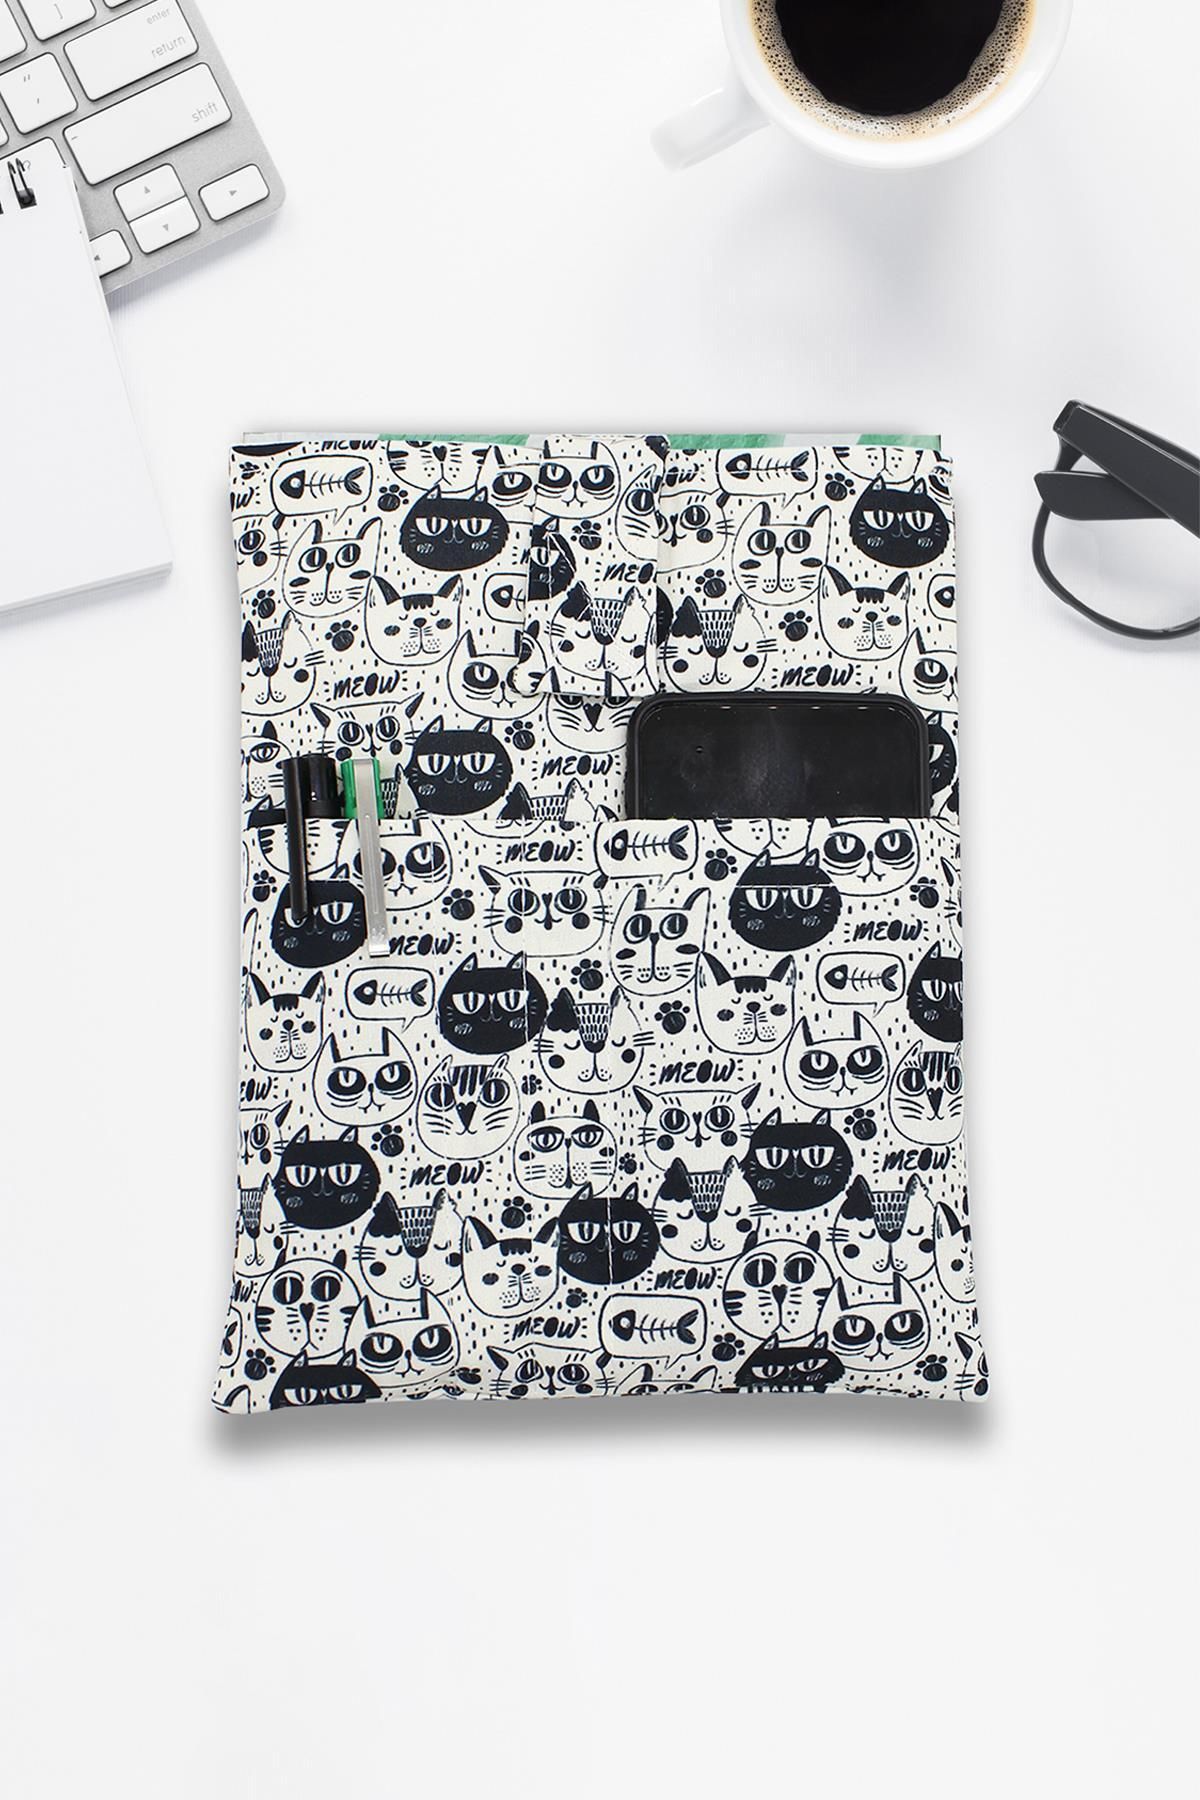 Kapax Mona Kara Kedi Desenli Yıkanabilir Cepli Kitap Kılıfı 20×25 Cm